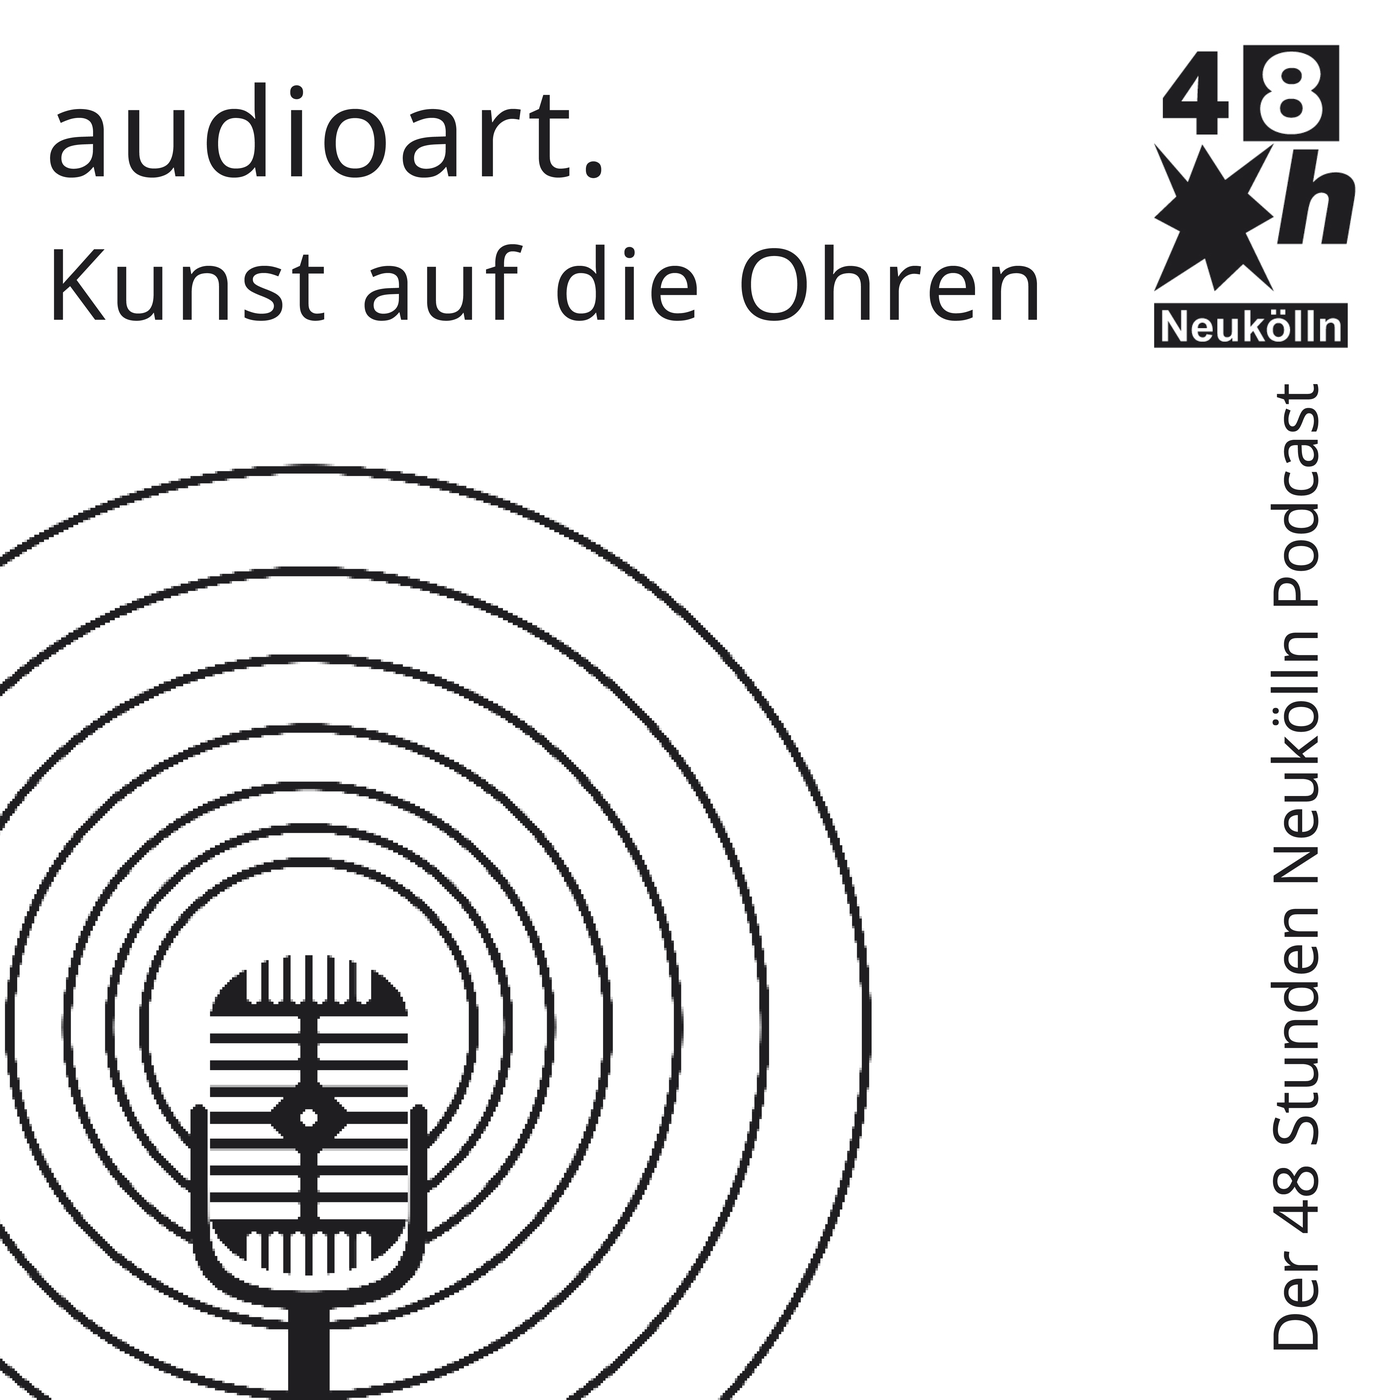 #4: audioart - Kunst auf die Ohren